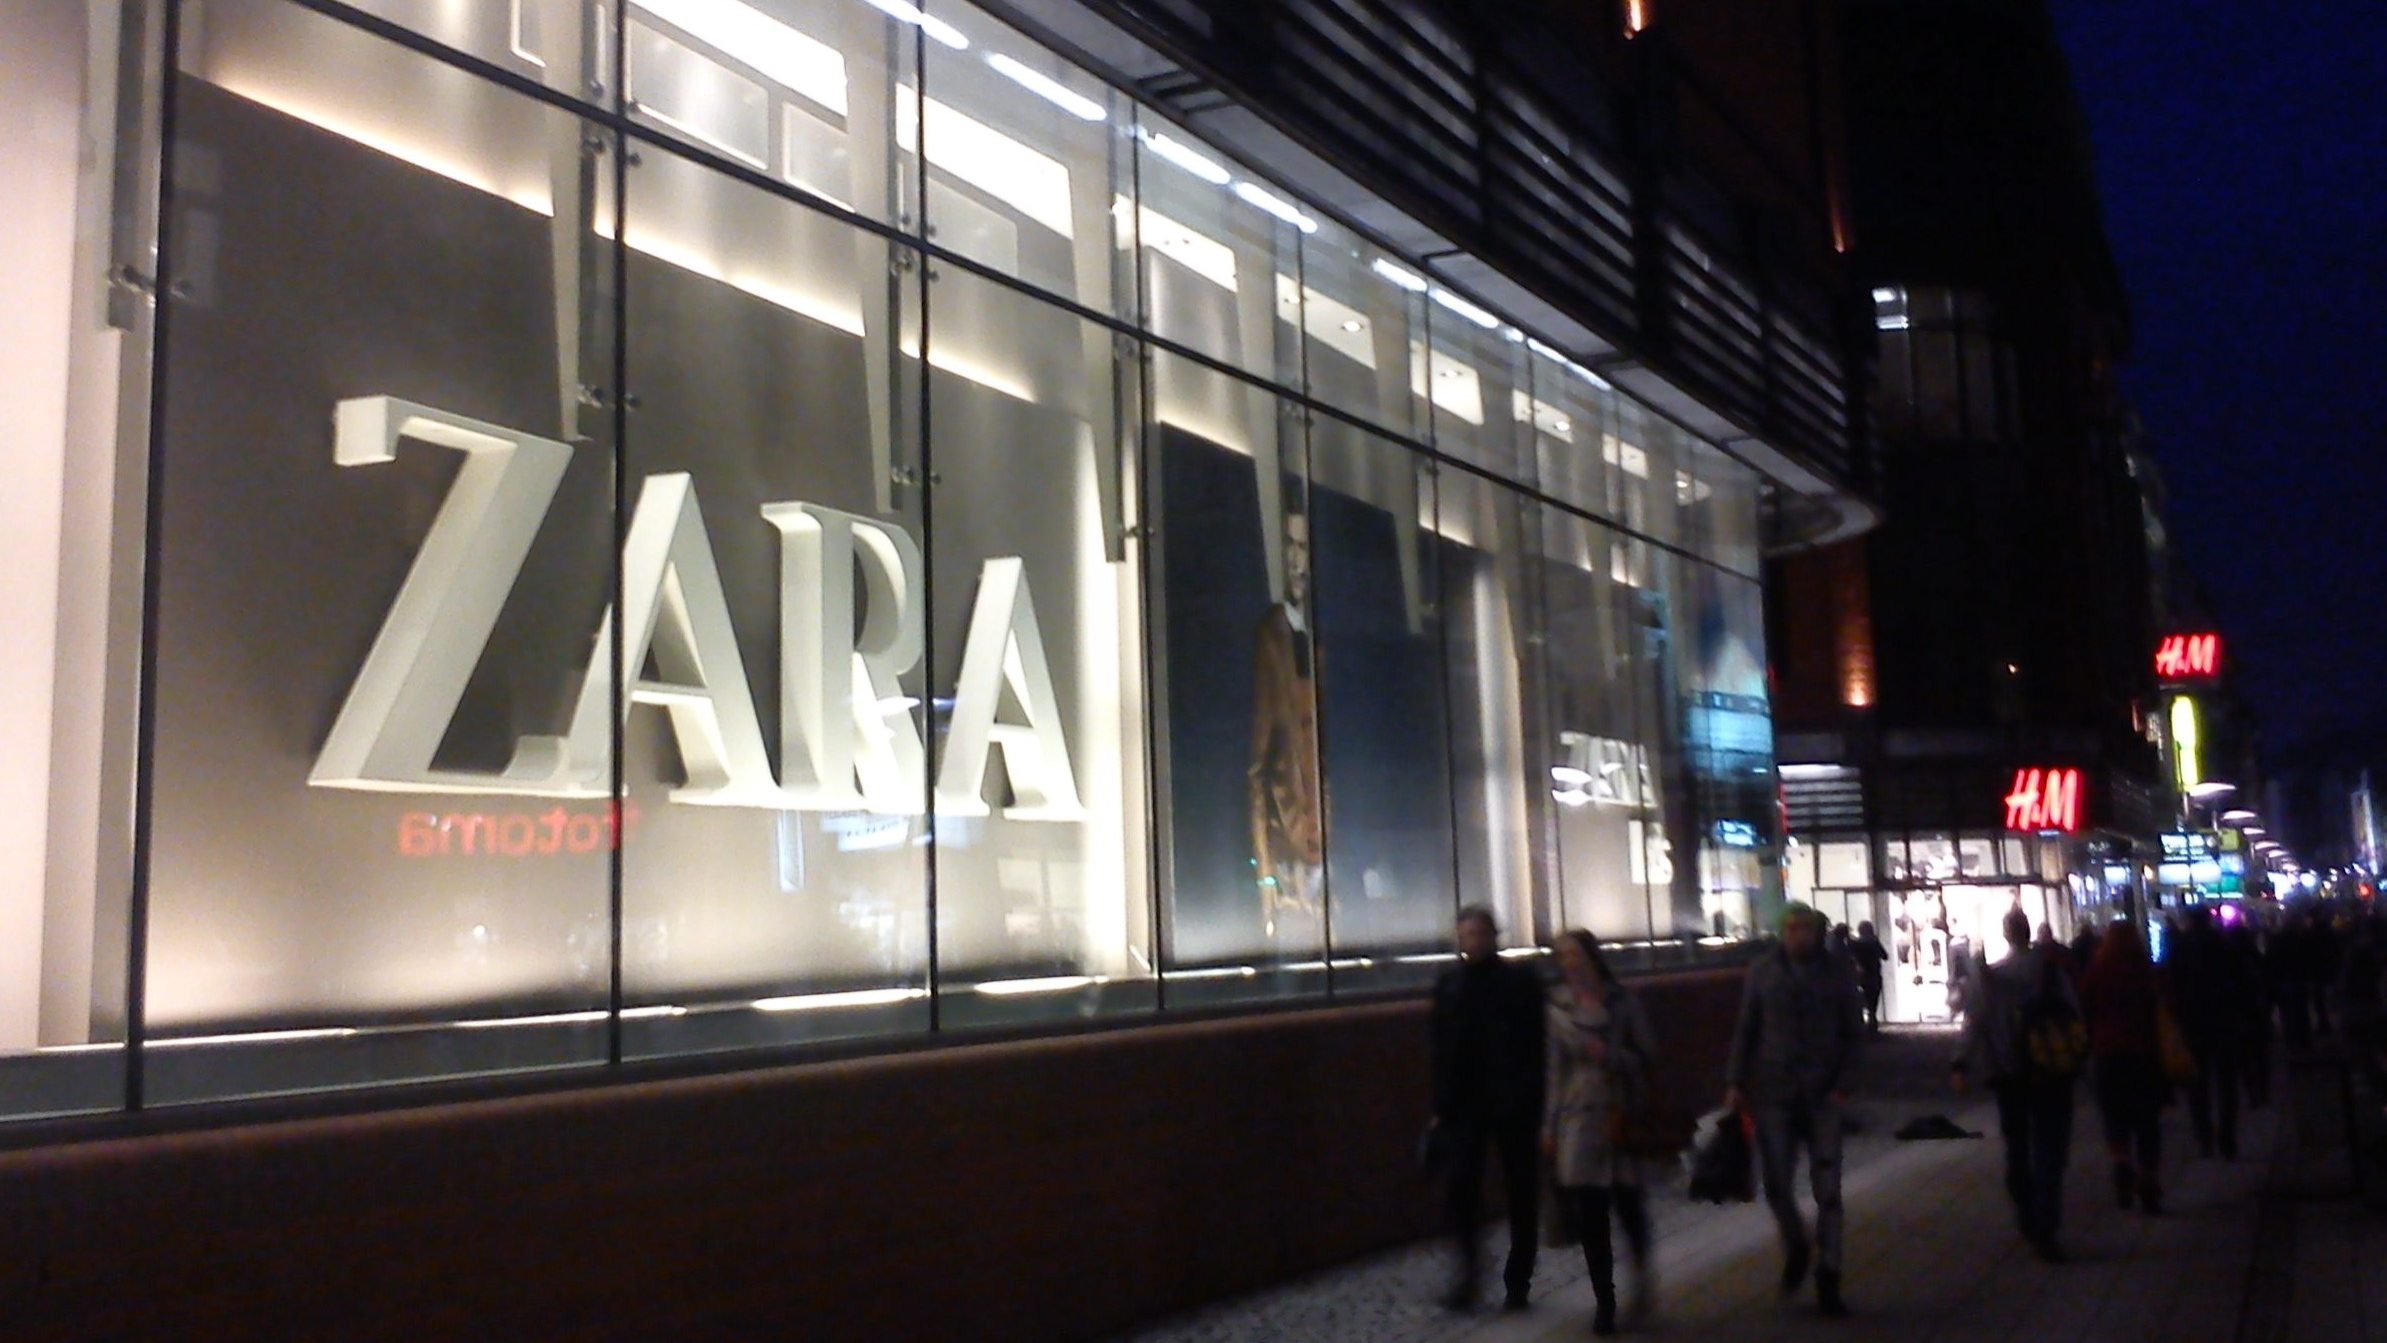 É oficial: já pode comprar e vender roupa em segunda mão na Zara